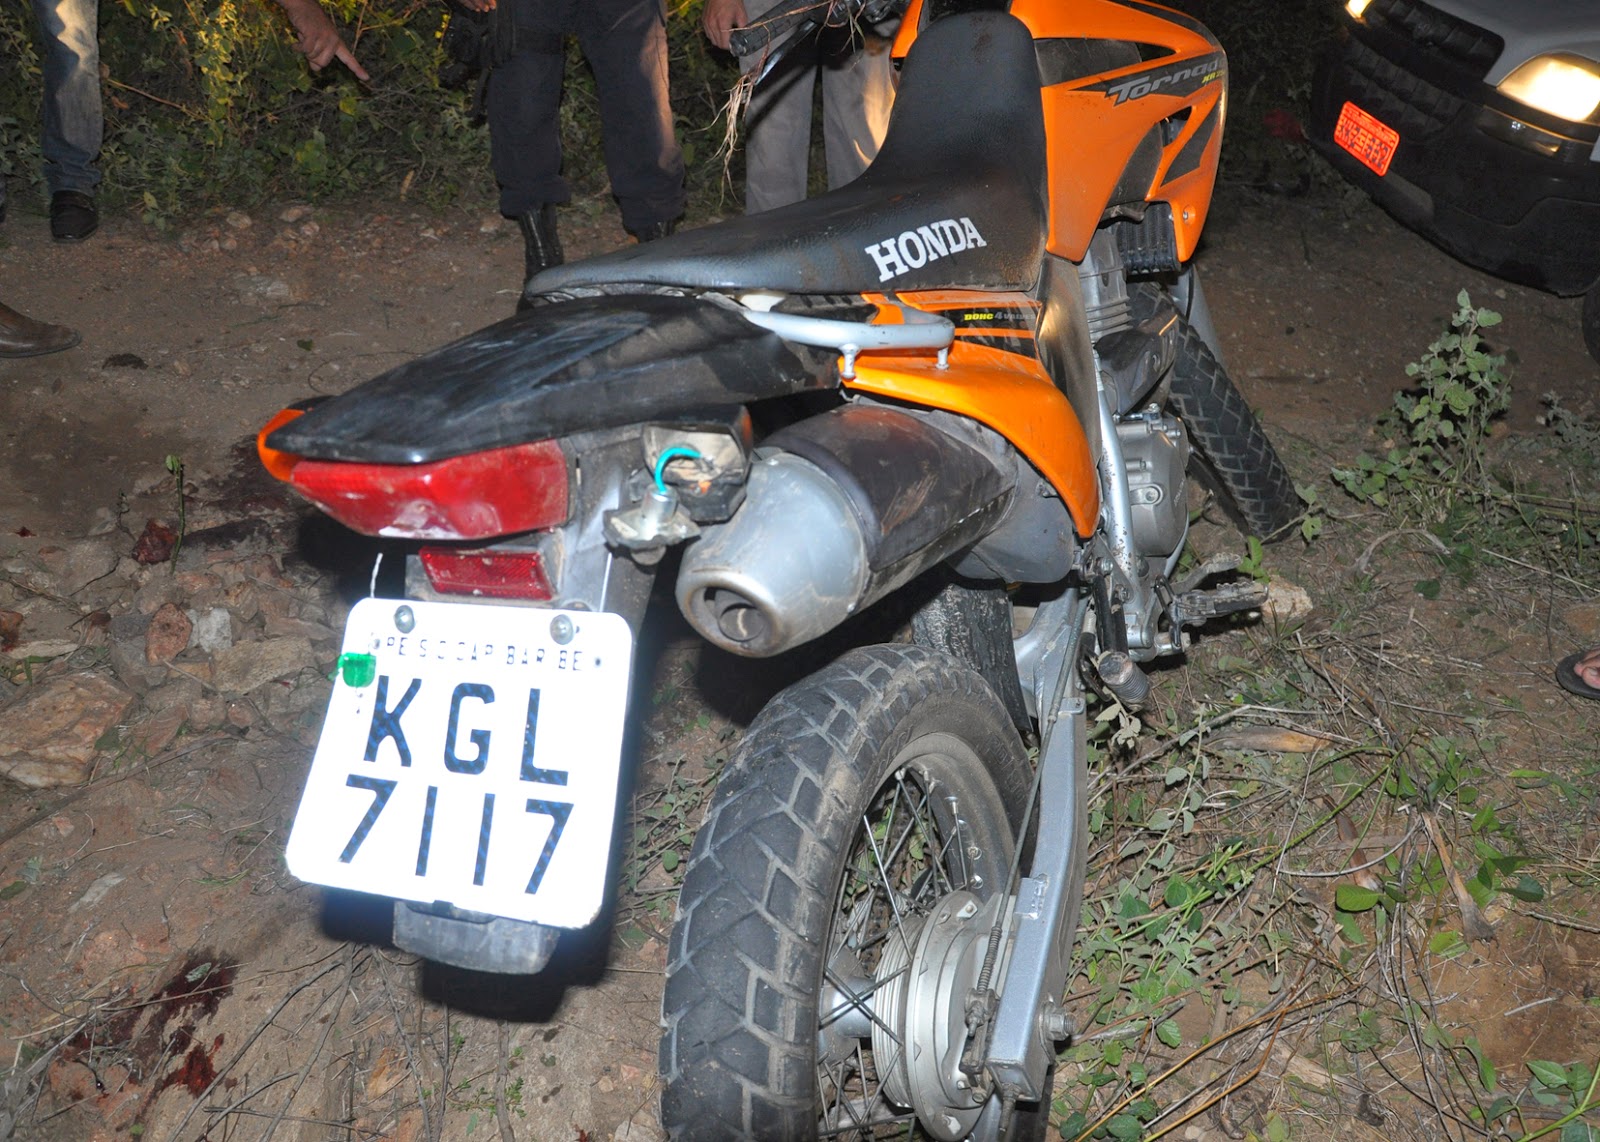 Últimas Notícias - Duas motos roubadas em Santana de Parnaiba - SP - MotoX